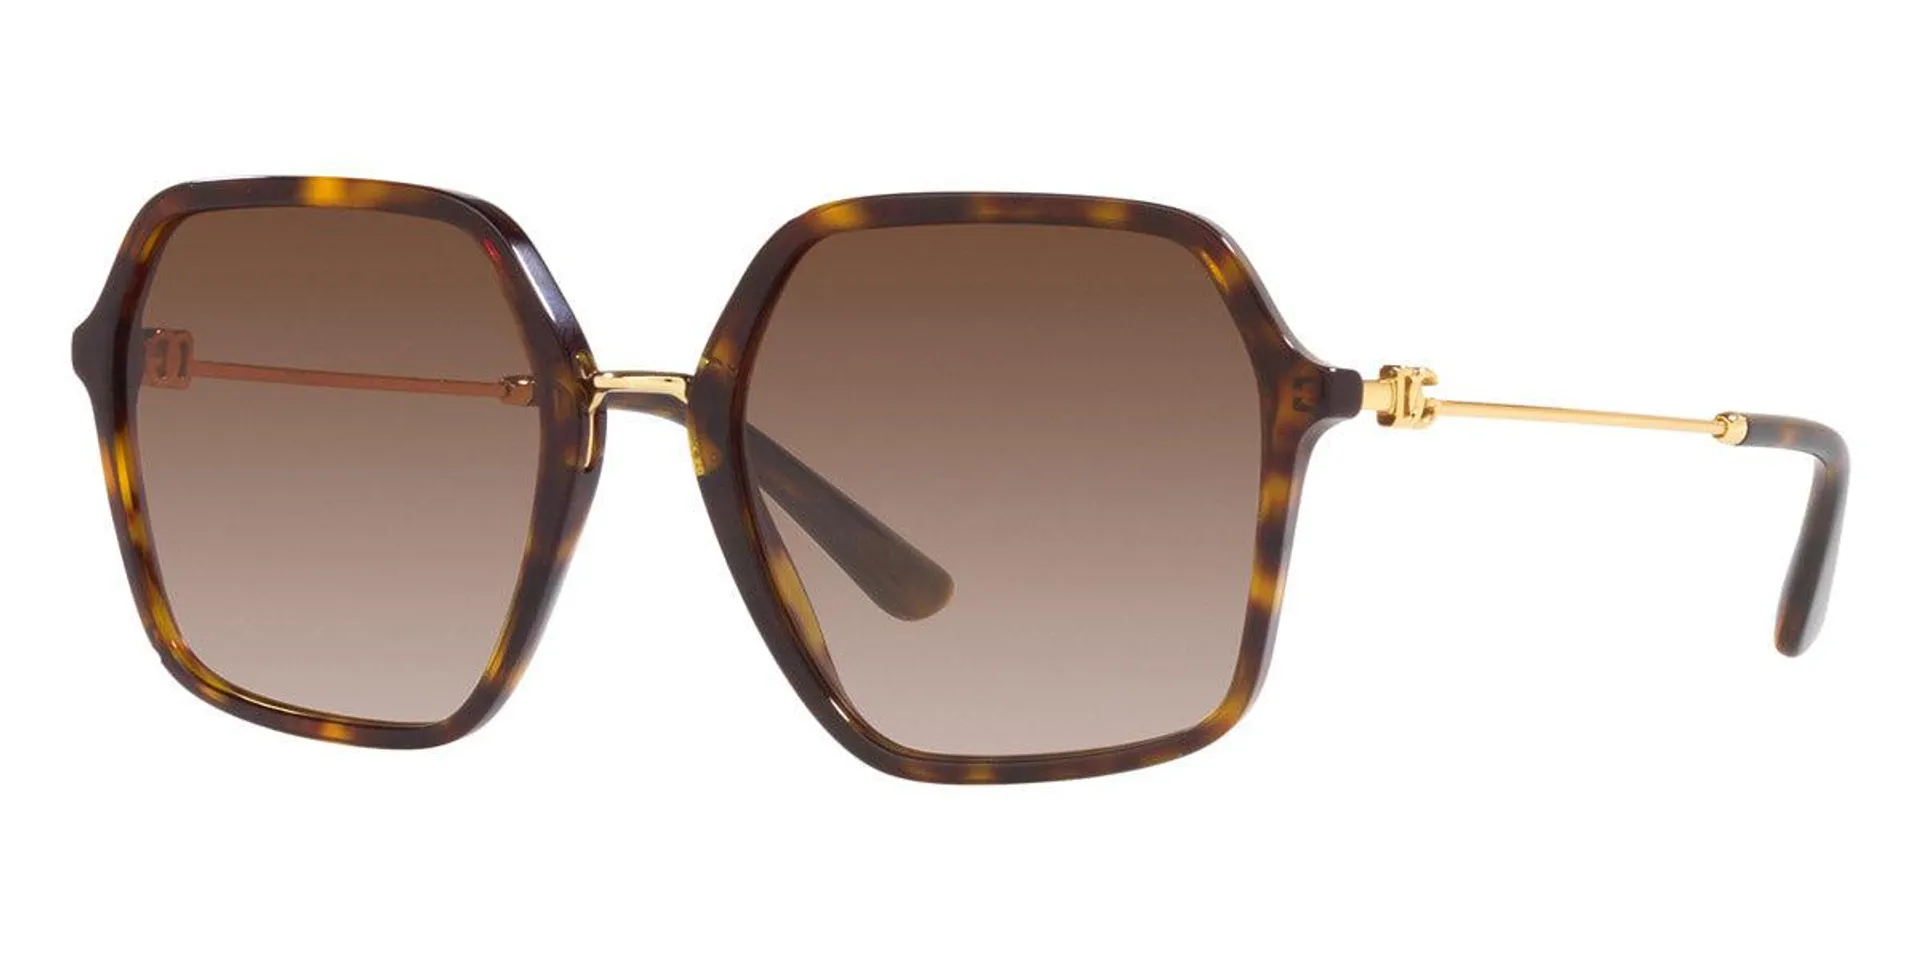 Dolce & Gabbana Women's DG4422-502-13-56 Fashion 56mm Havana Sunglasses